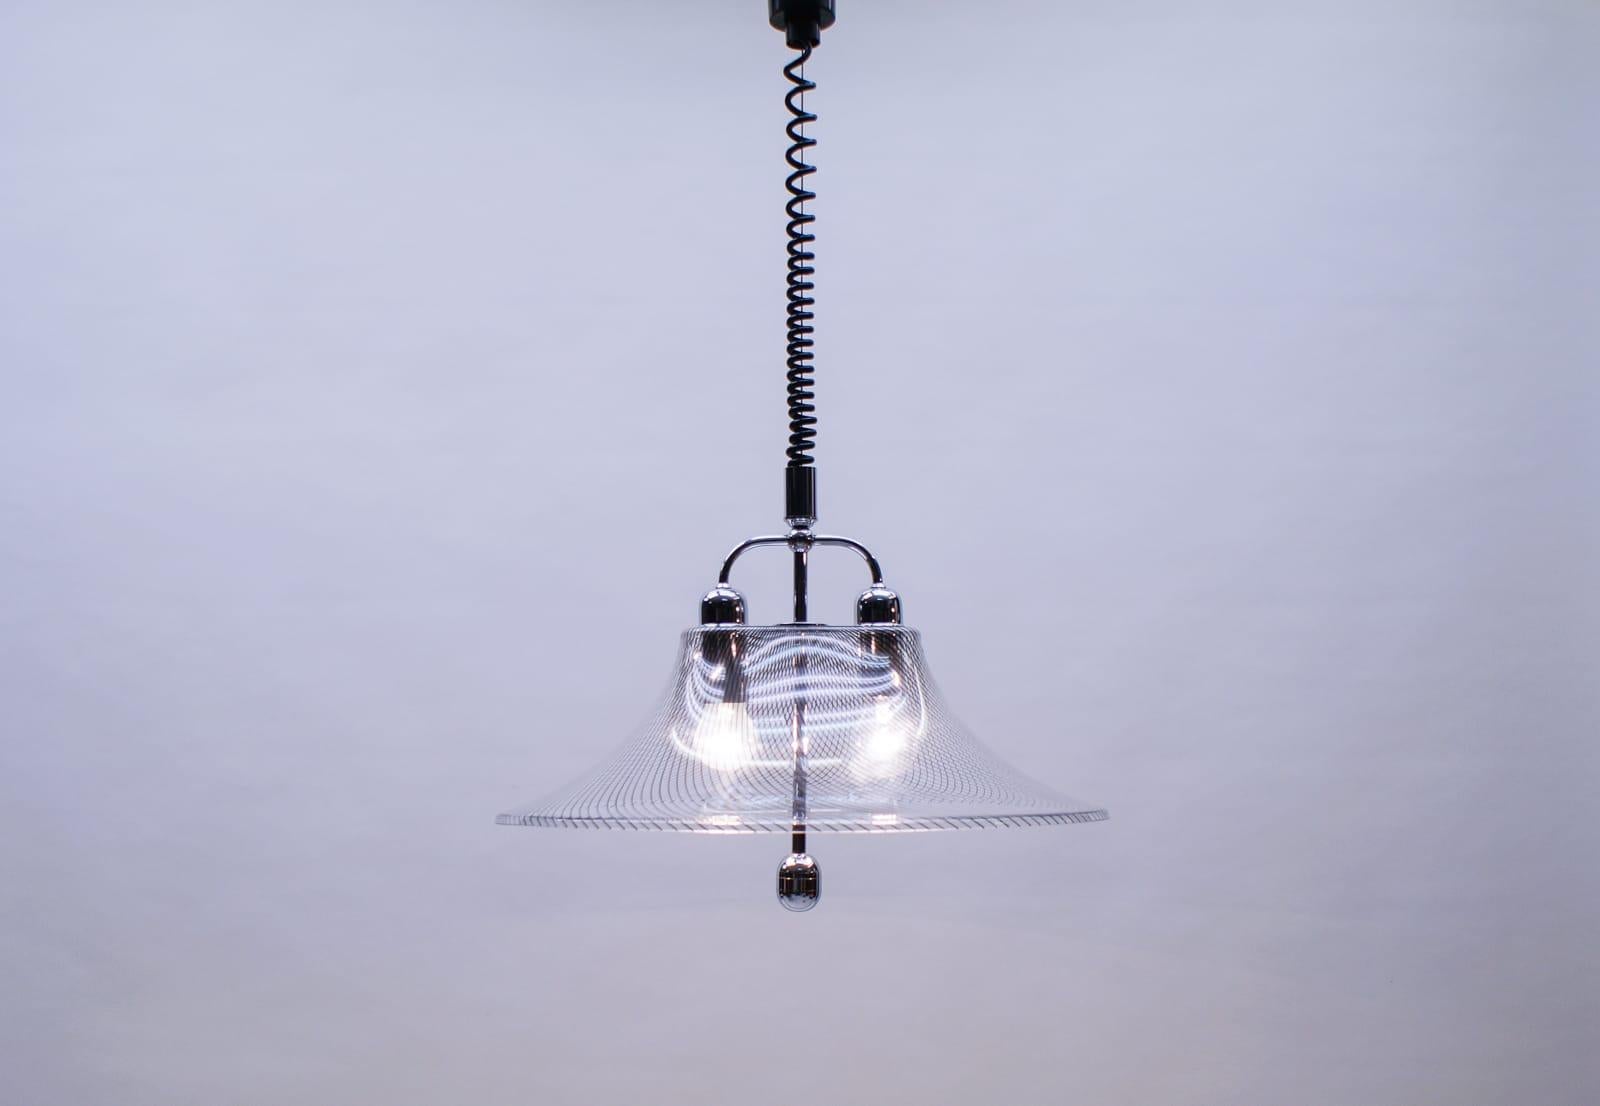 Très élégante lampe à suspension en acrylique rayée d'Edel-Acryl, 1970

Hauteur réglable de 70 à 158 cm.

Réalisée en acier chromé massif, la lampe est livrée avec 2 douilles à vis Edison E27 / E26, est câblée, en état de marche et fonctionne